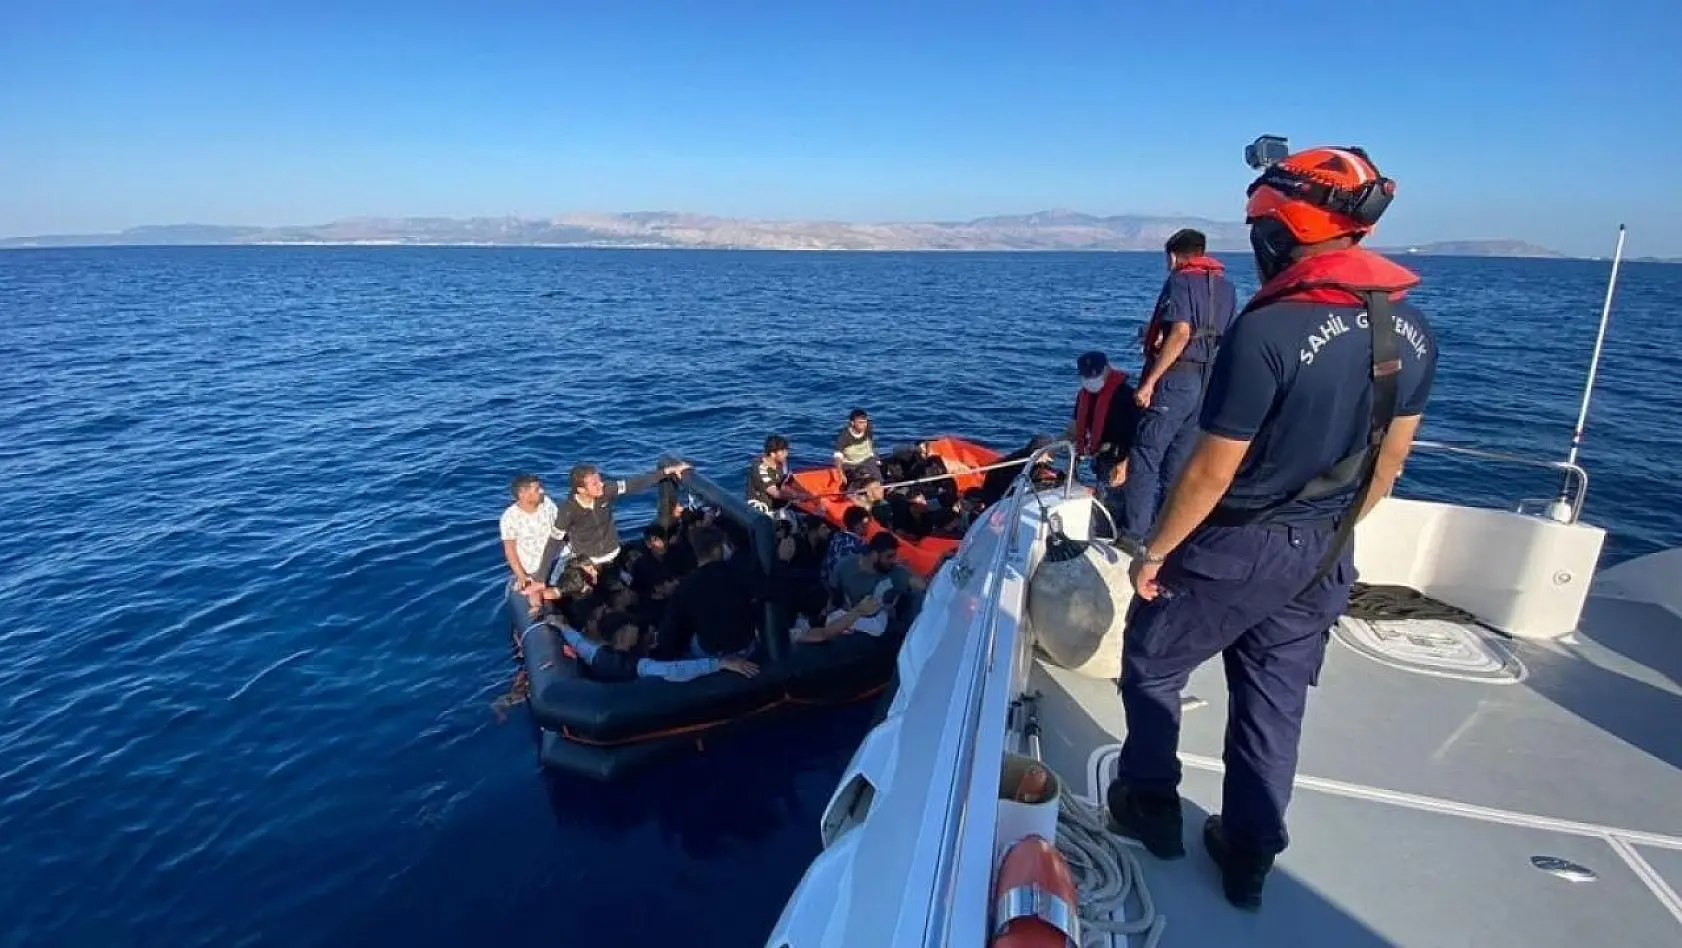 Yunan unsurunun geri ittiği 44 göçmen Çeşme açıklarında kurtarıldı